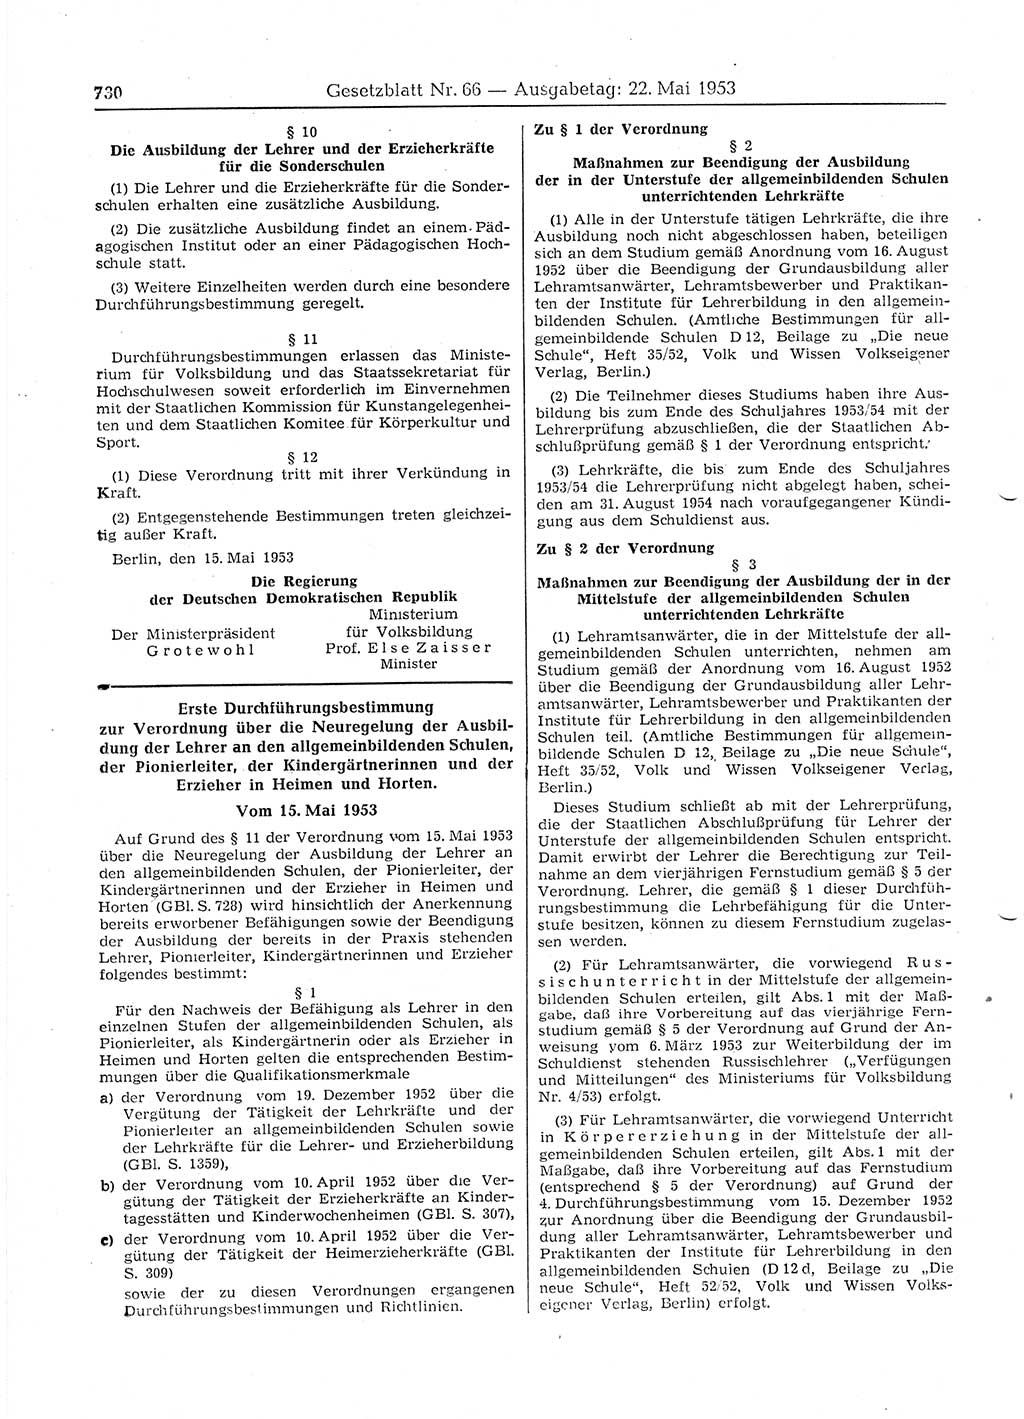 Gesetzblatt (GBl.) der Deutschen Demokratischen Republik (DDR) 1953, Seite 730 (GBl. DDR 1953, S. 730)